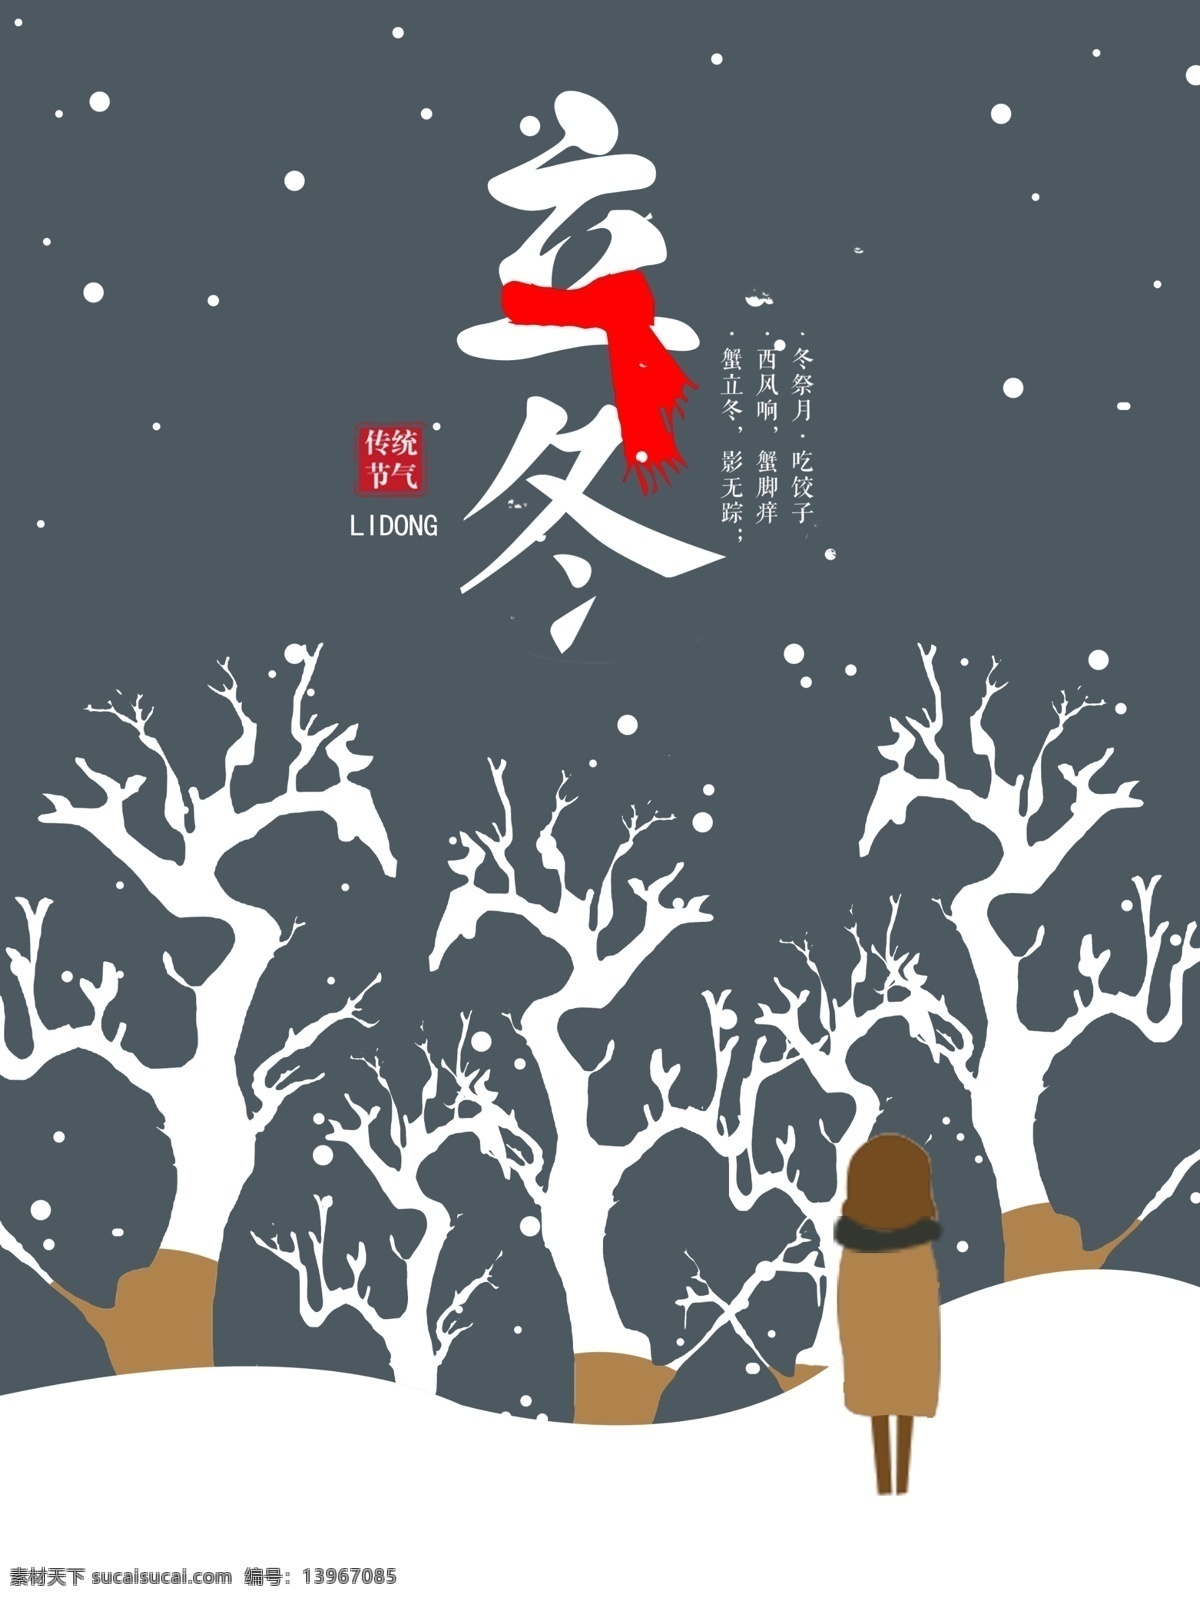 原创 插画 二十四节气 立冬 节日 节气 海报 树 雪花 雪中的人 印章 字体 围巾